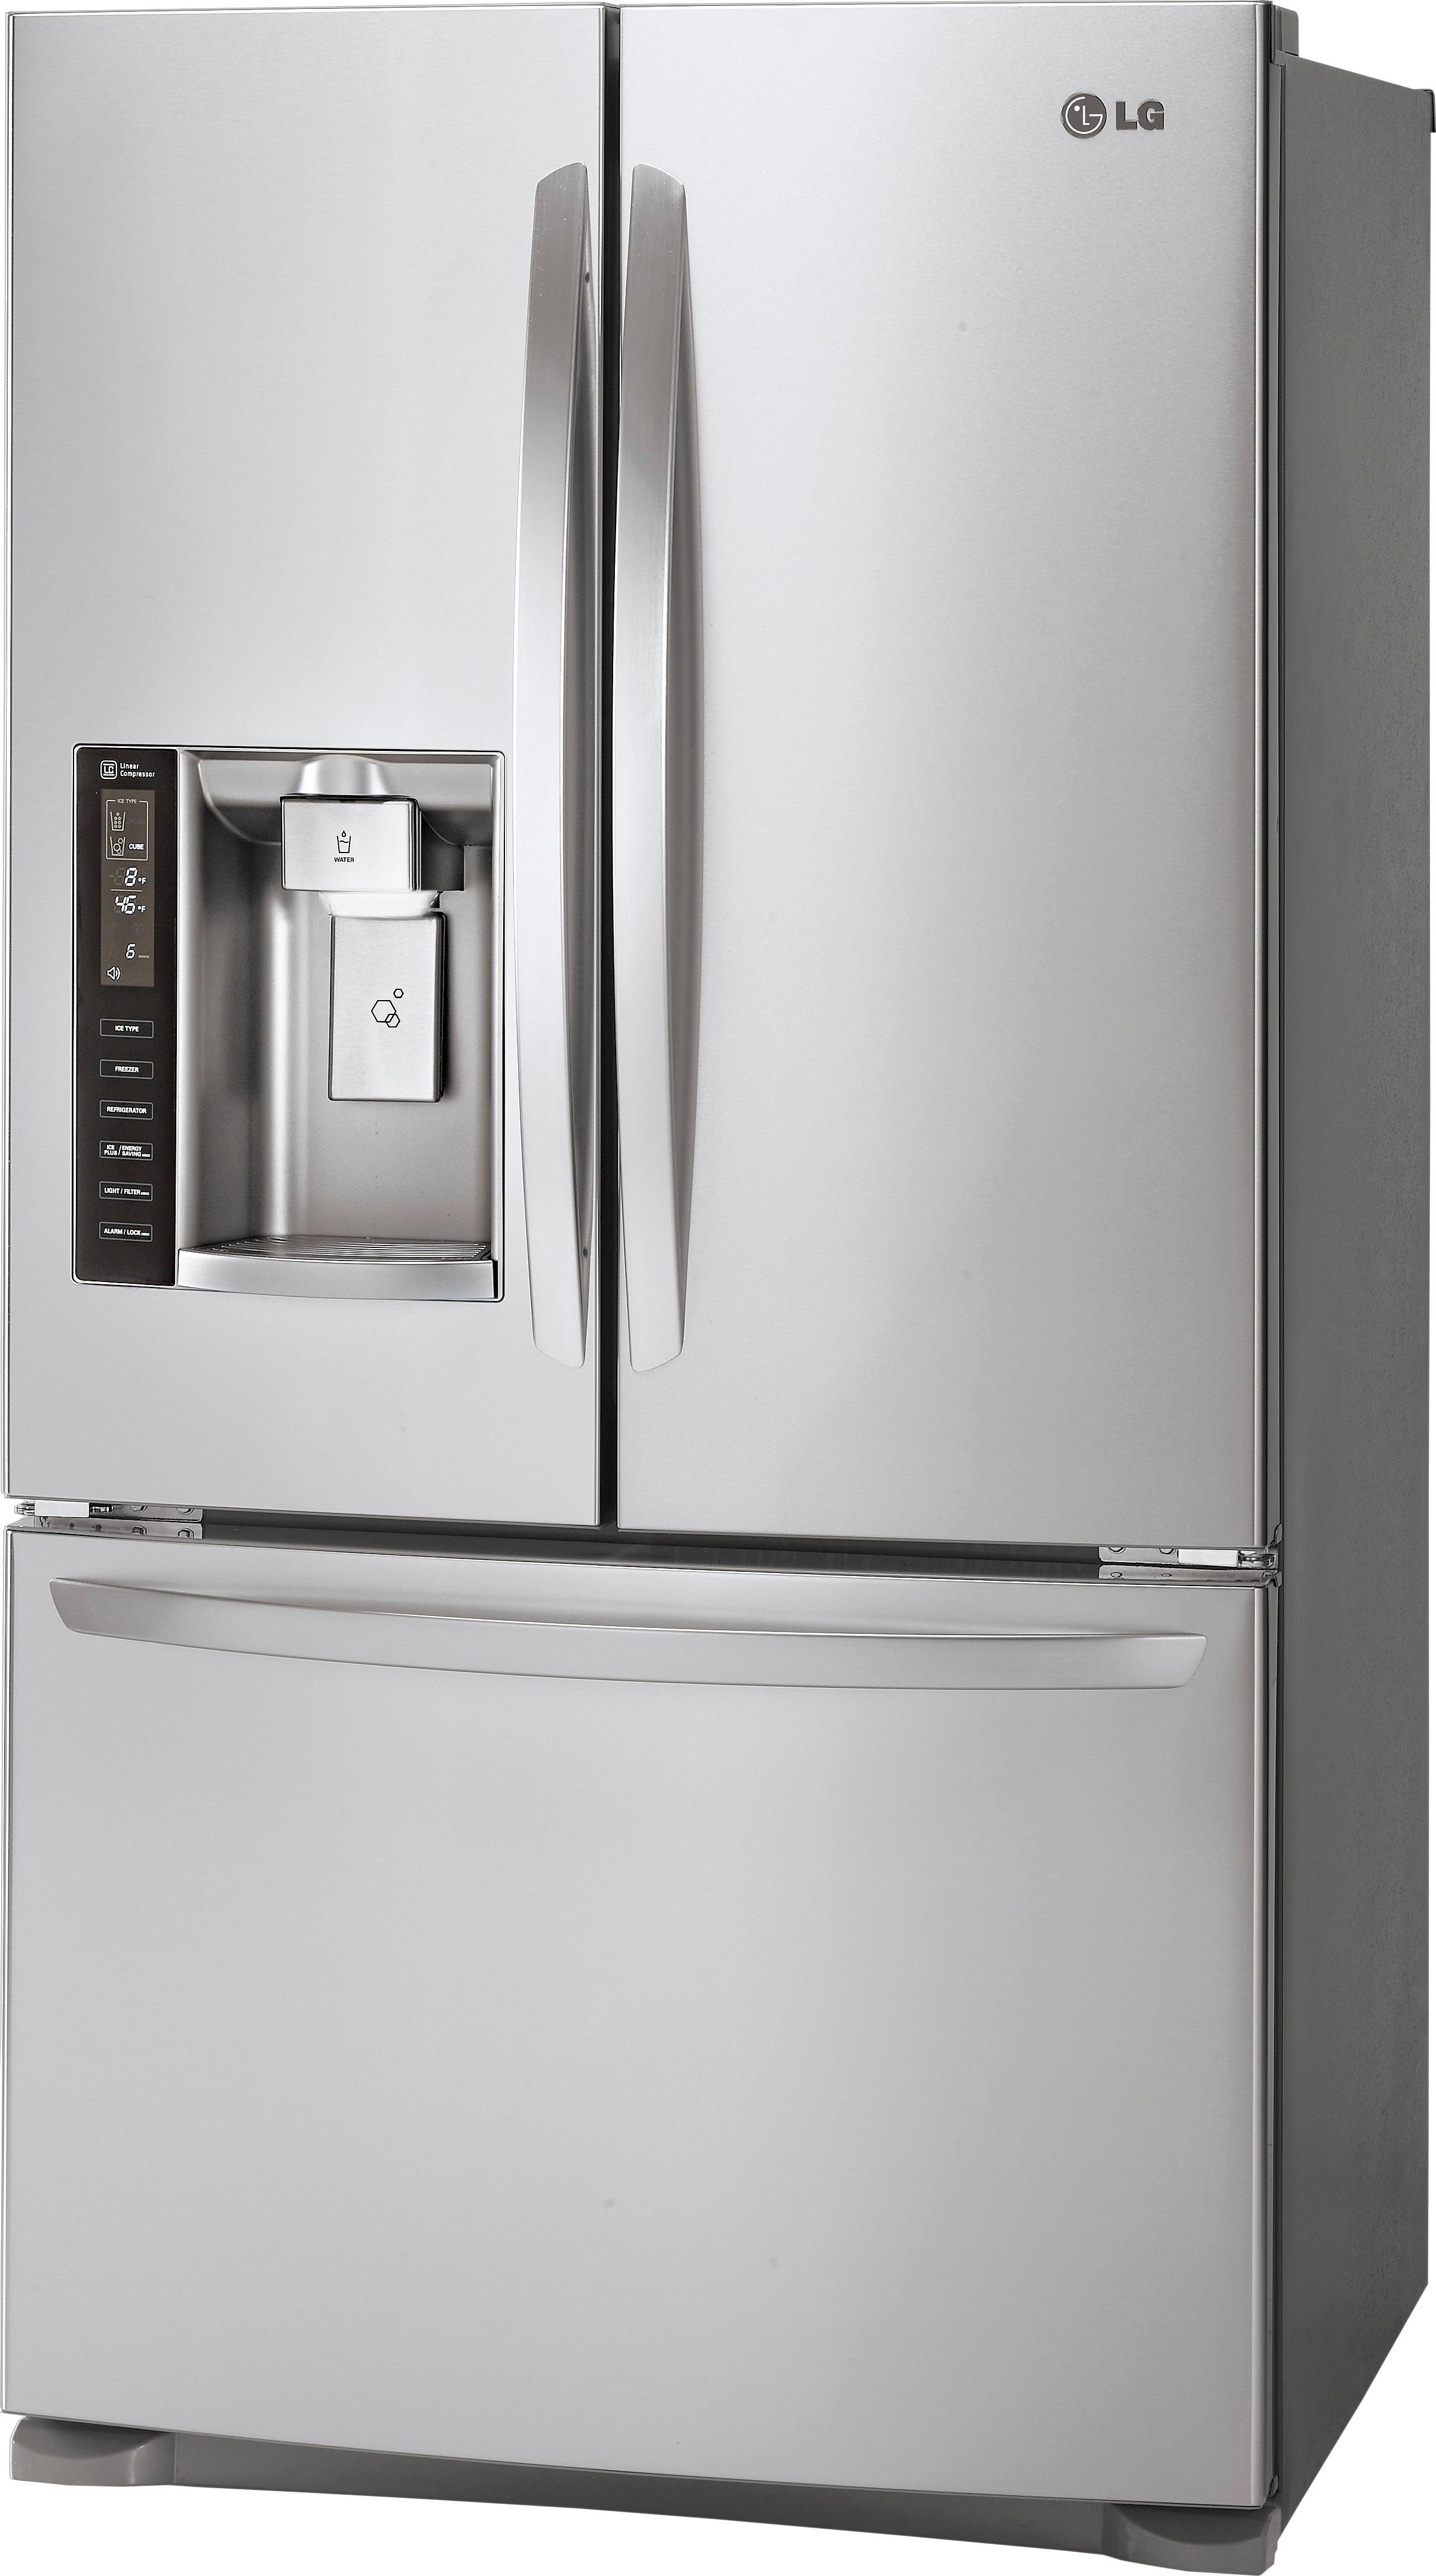 Best Buy: LG 19.8 Cu. Ft. Counter-Depth French Door Refrigerator ...